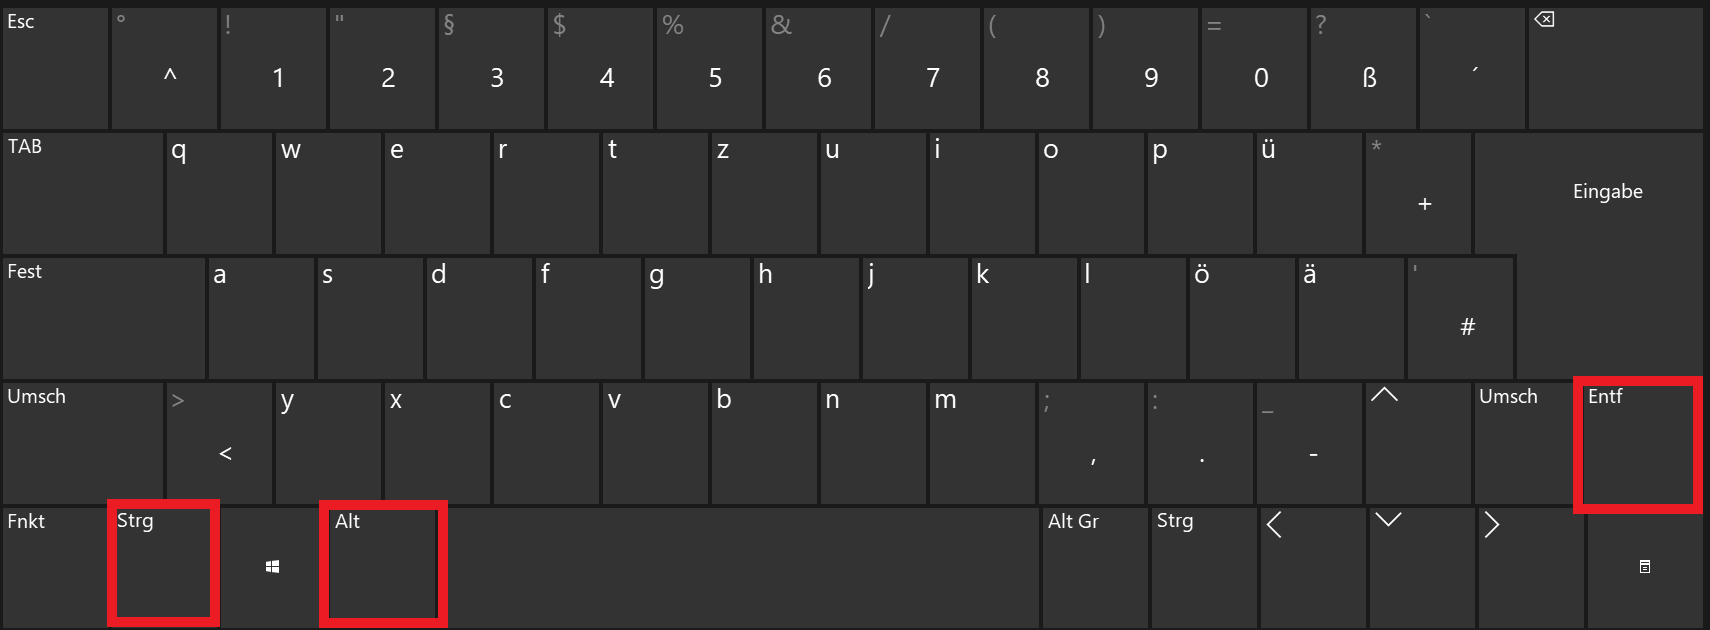 Der Shortcut Strg + Alt + Entf auf der Windows-Tastatur